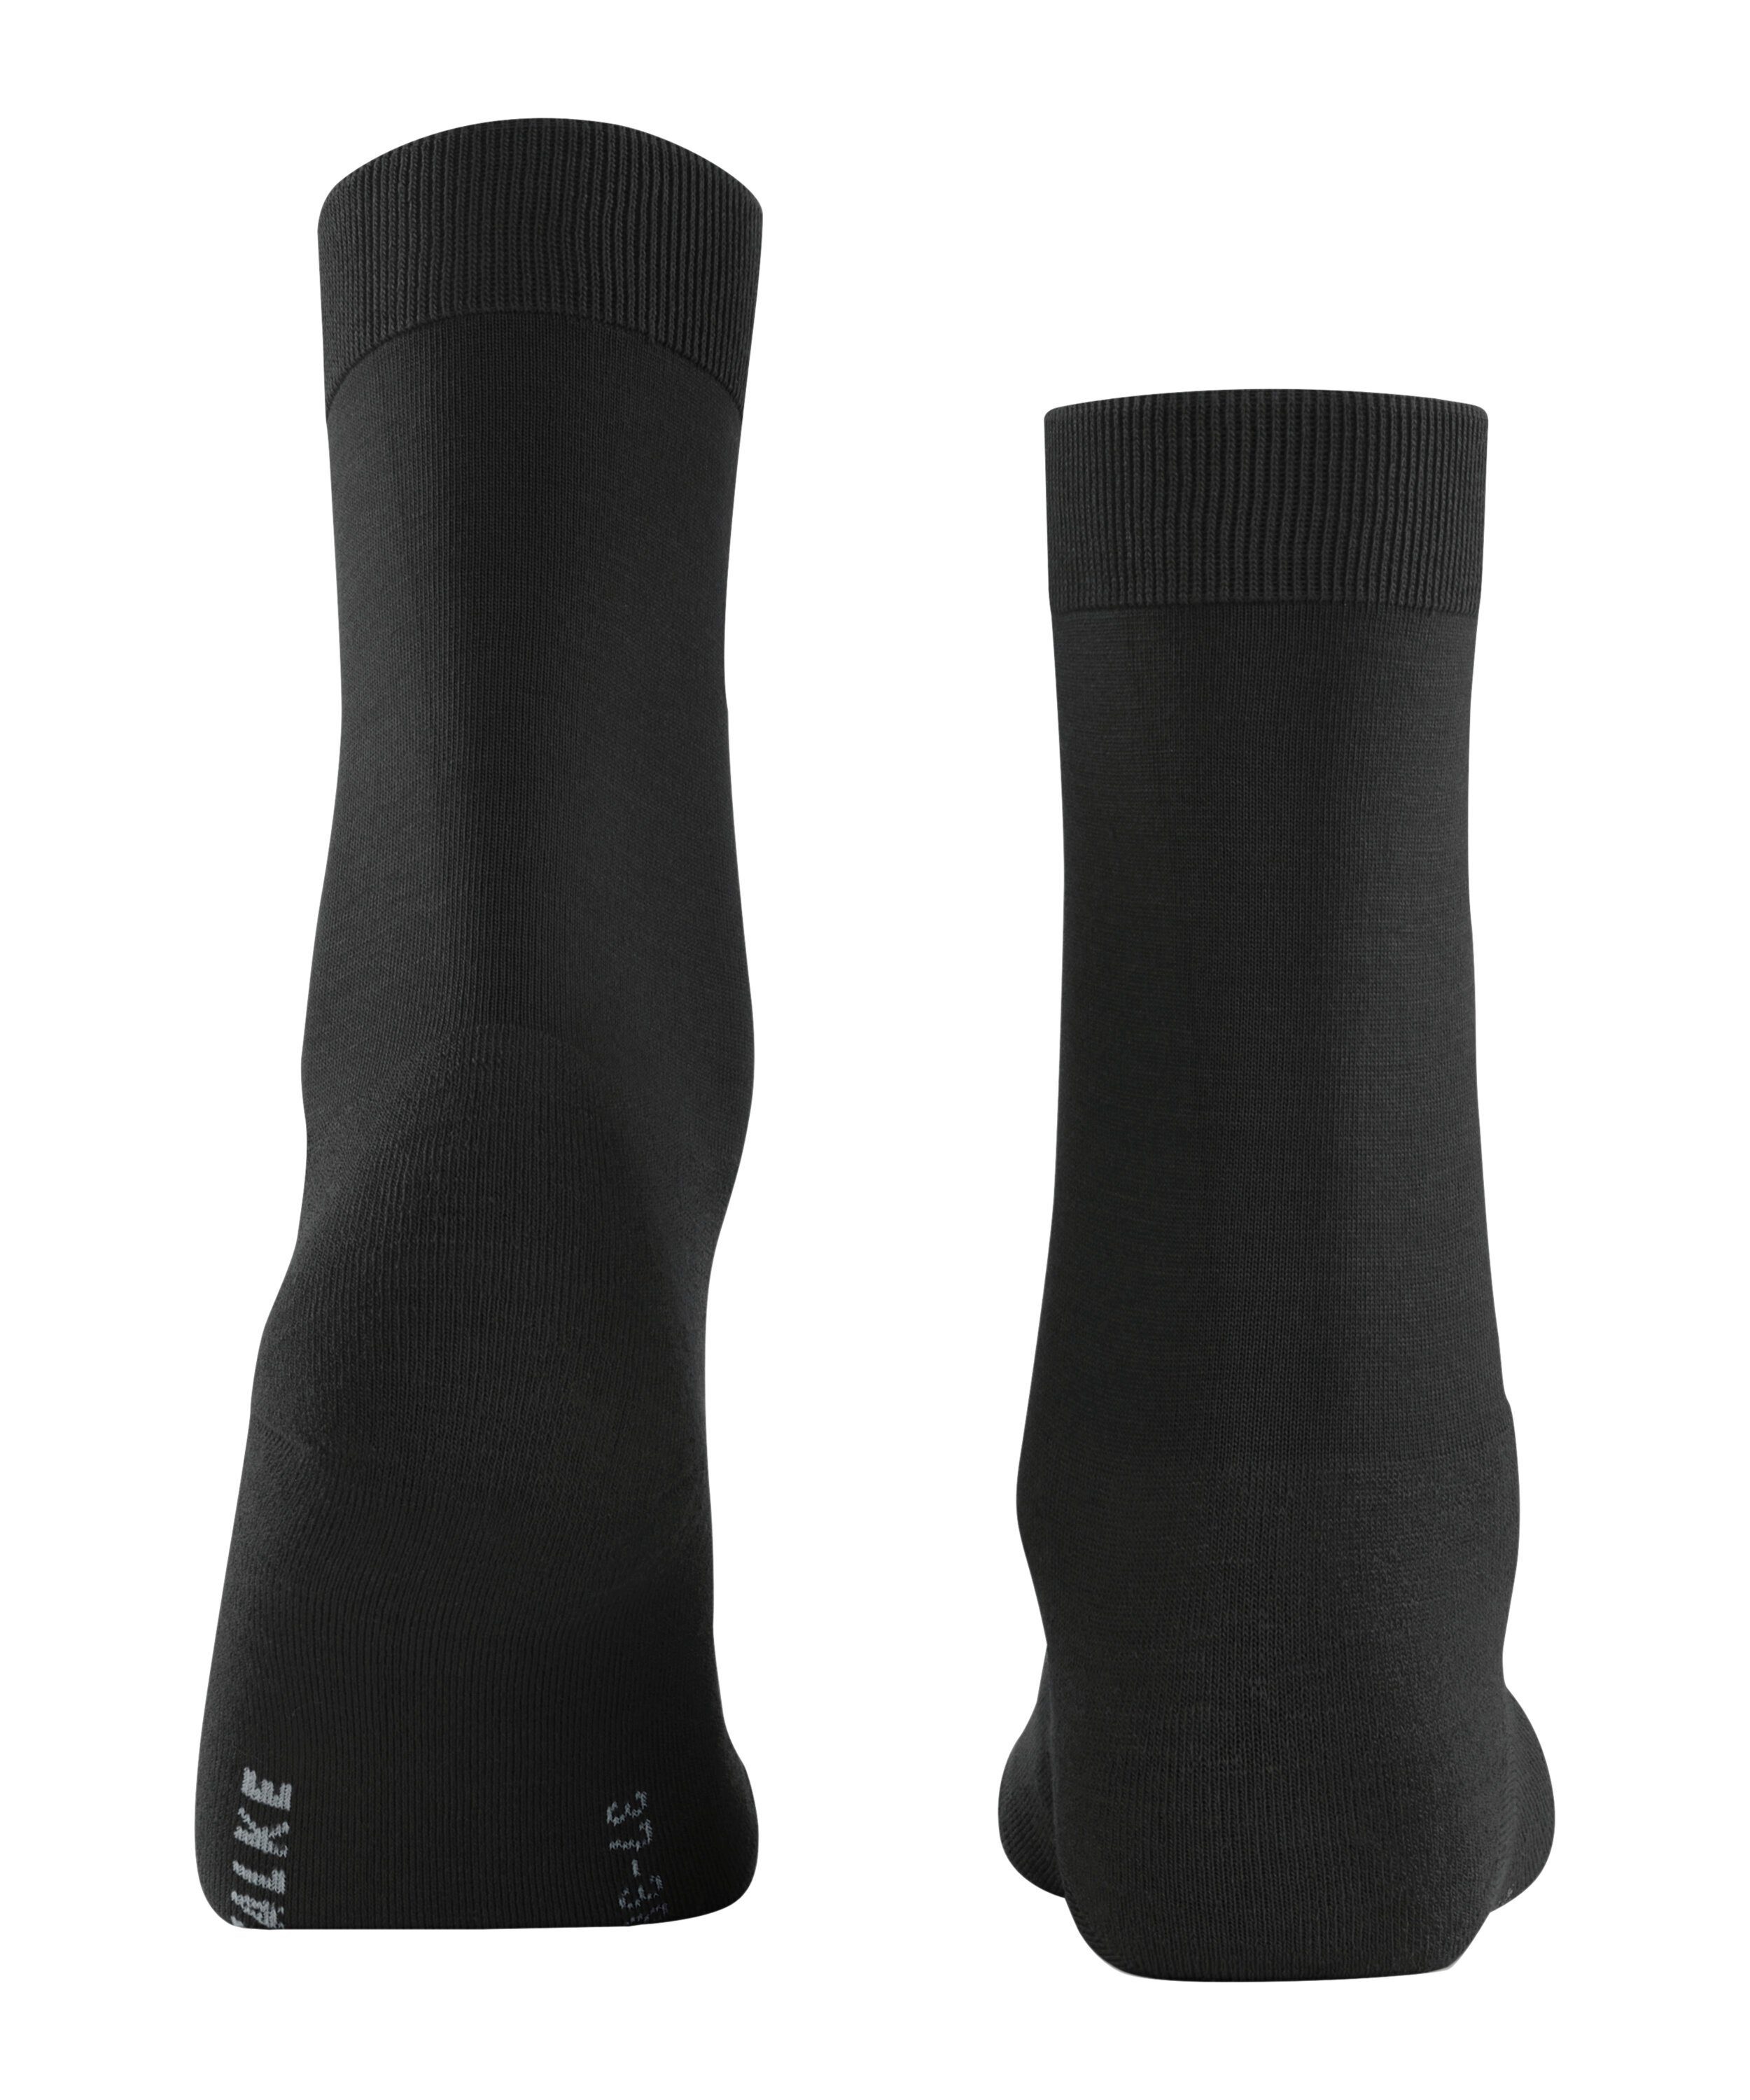 (3000) FALKE (1-Paar) ClimaWool black Socken